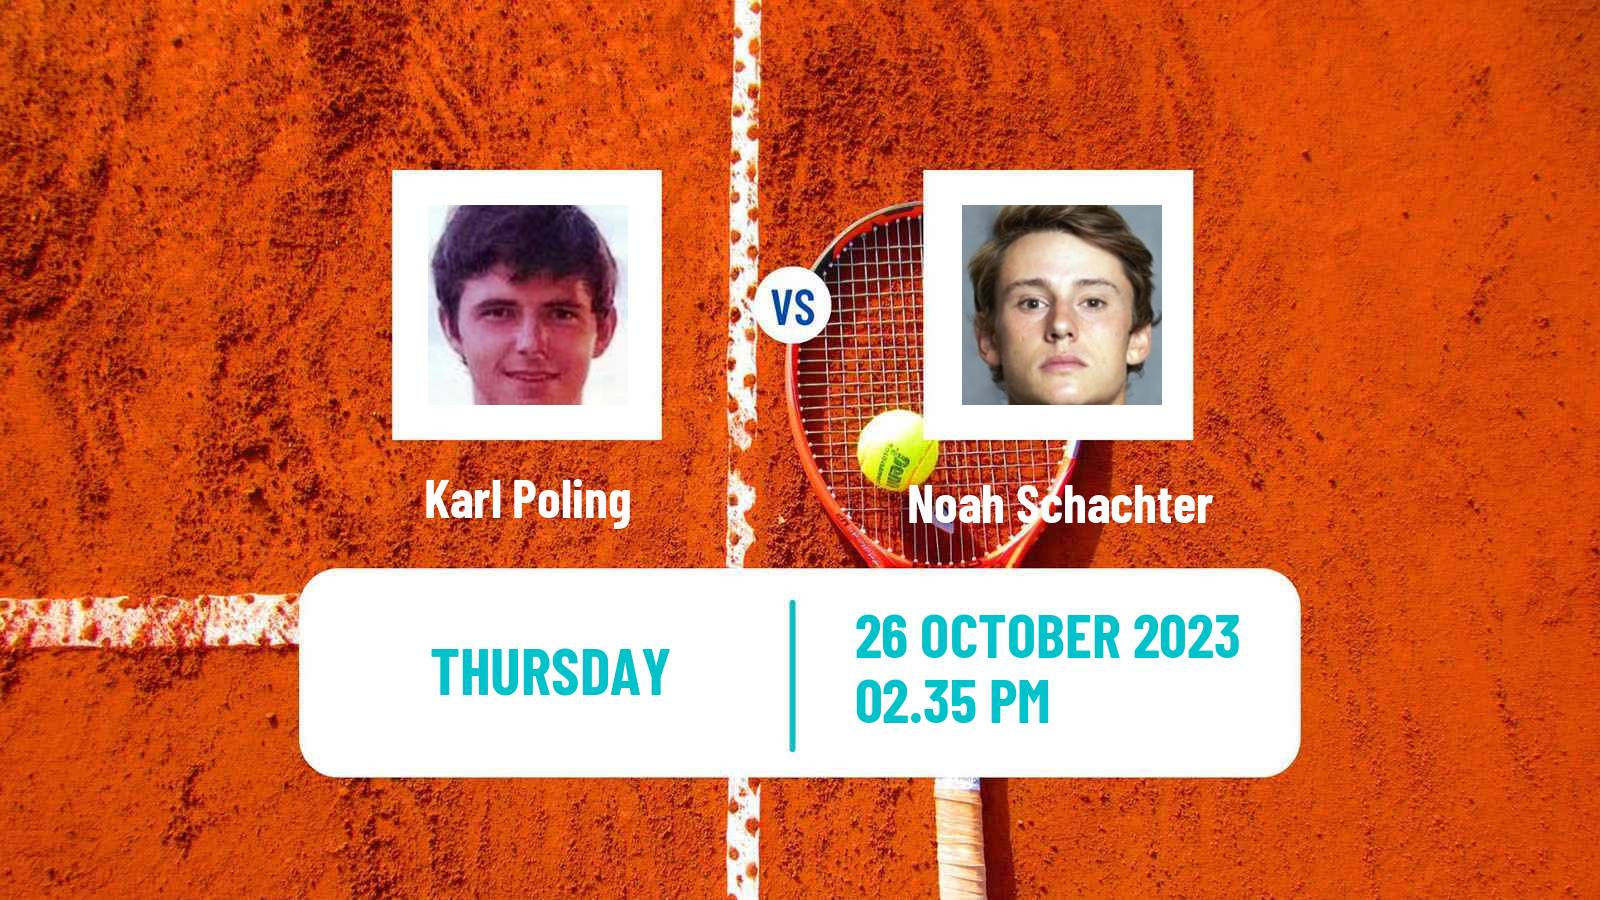 Tennis ITF M15 Tallahassee Fl Men Karl Poling - Noah Schachter